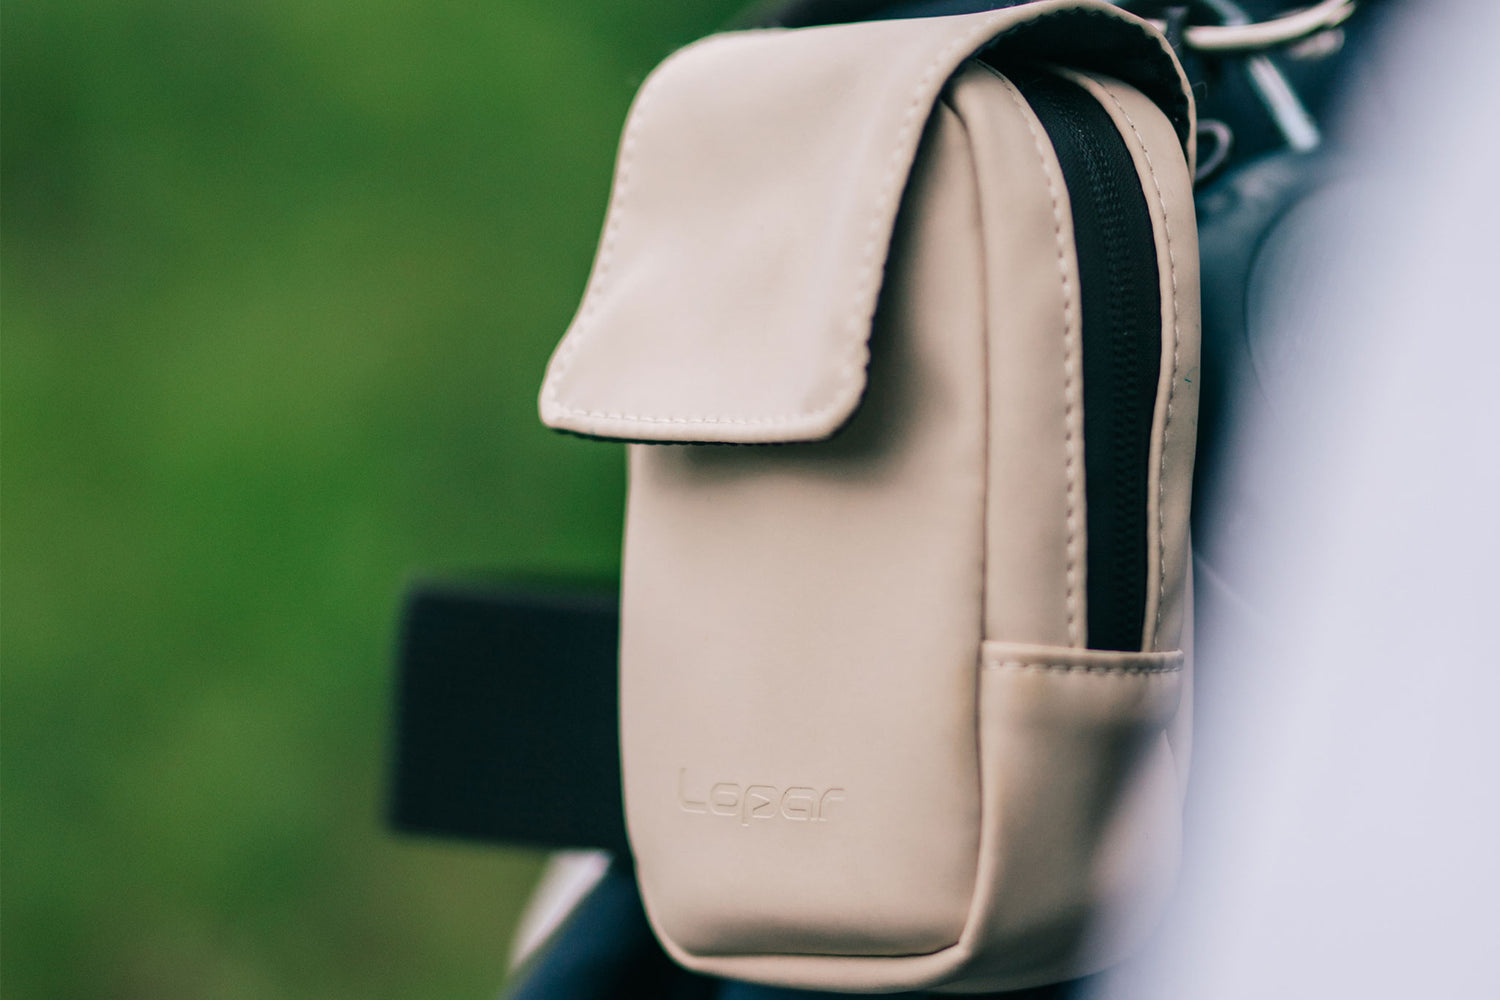 rangefinder case on golf bag